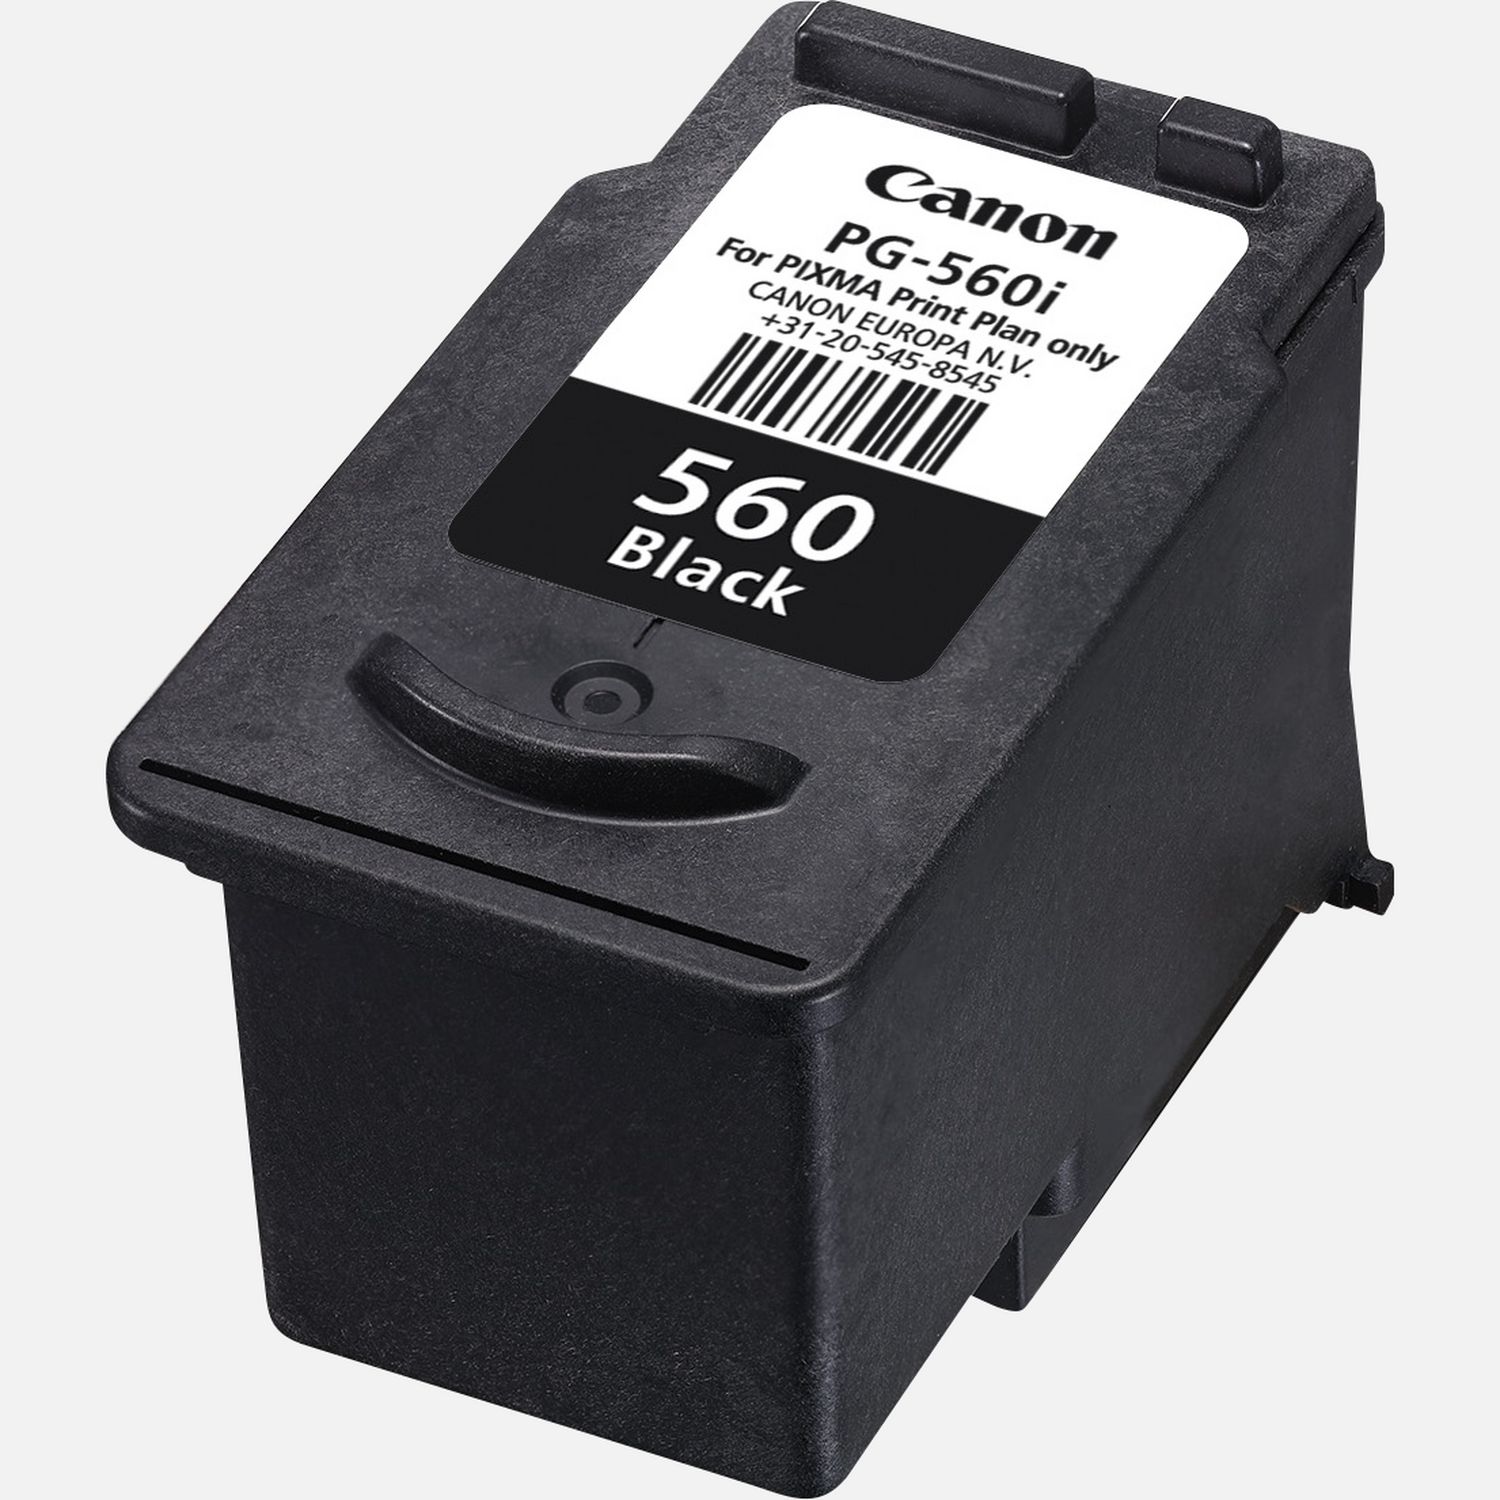 Cartouche d'encre noire Canon PG-560i pour l'abonnement PIXMA Print Plan